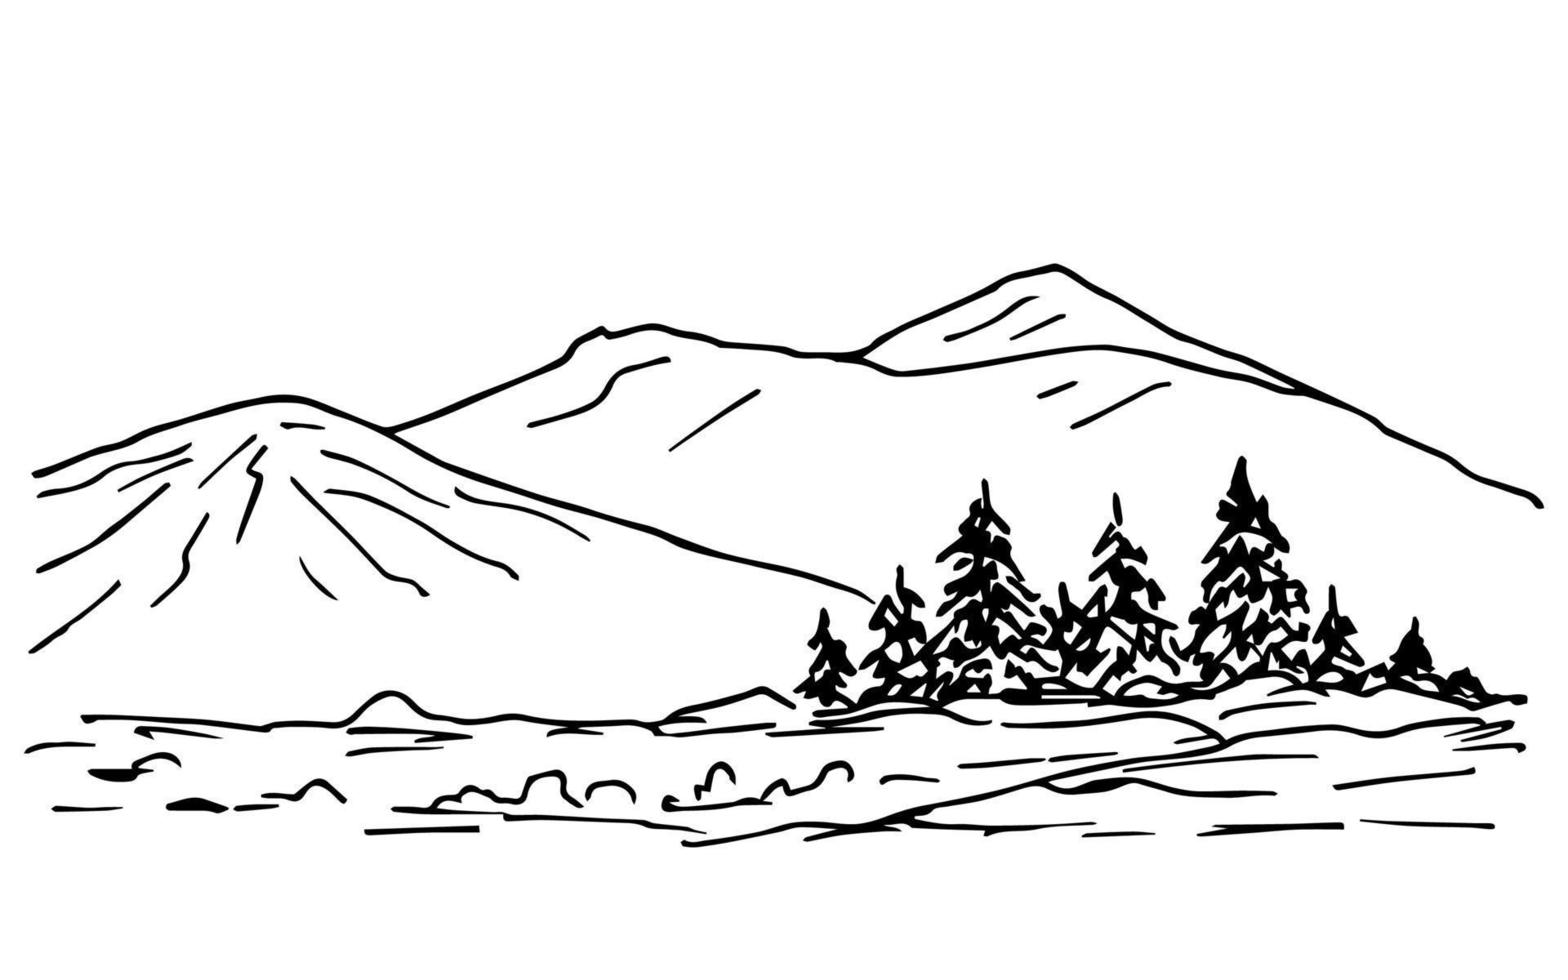 Hand gezeichnet Tinte Vektor skizzieren. ein einfach Landschaft von Nadelbaum Bäume auf ein hügel, das Kontur von das Berge auf das Horizont. Natur, Wald, reisen, Tourismus. zum Karten, Aufkleber, Drucke, Färbung.